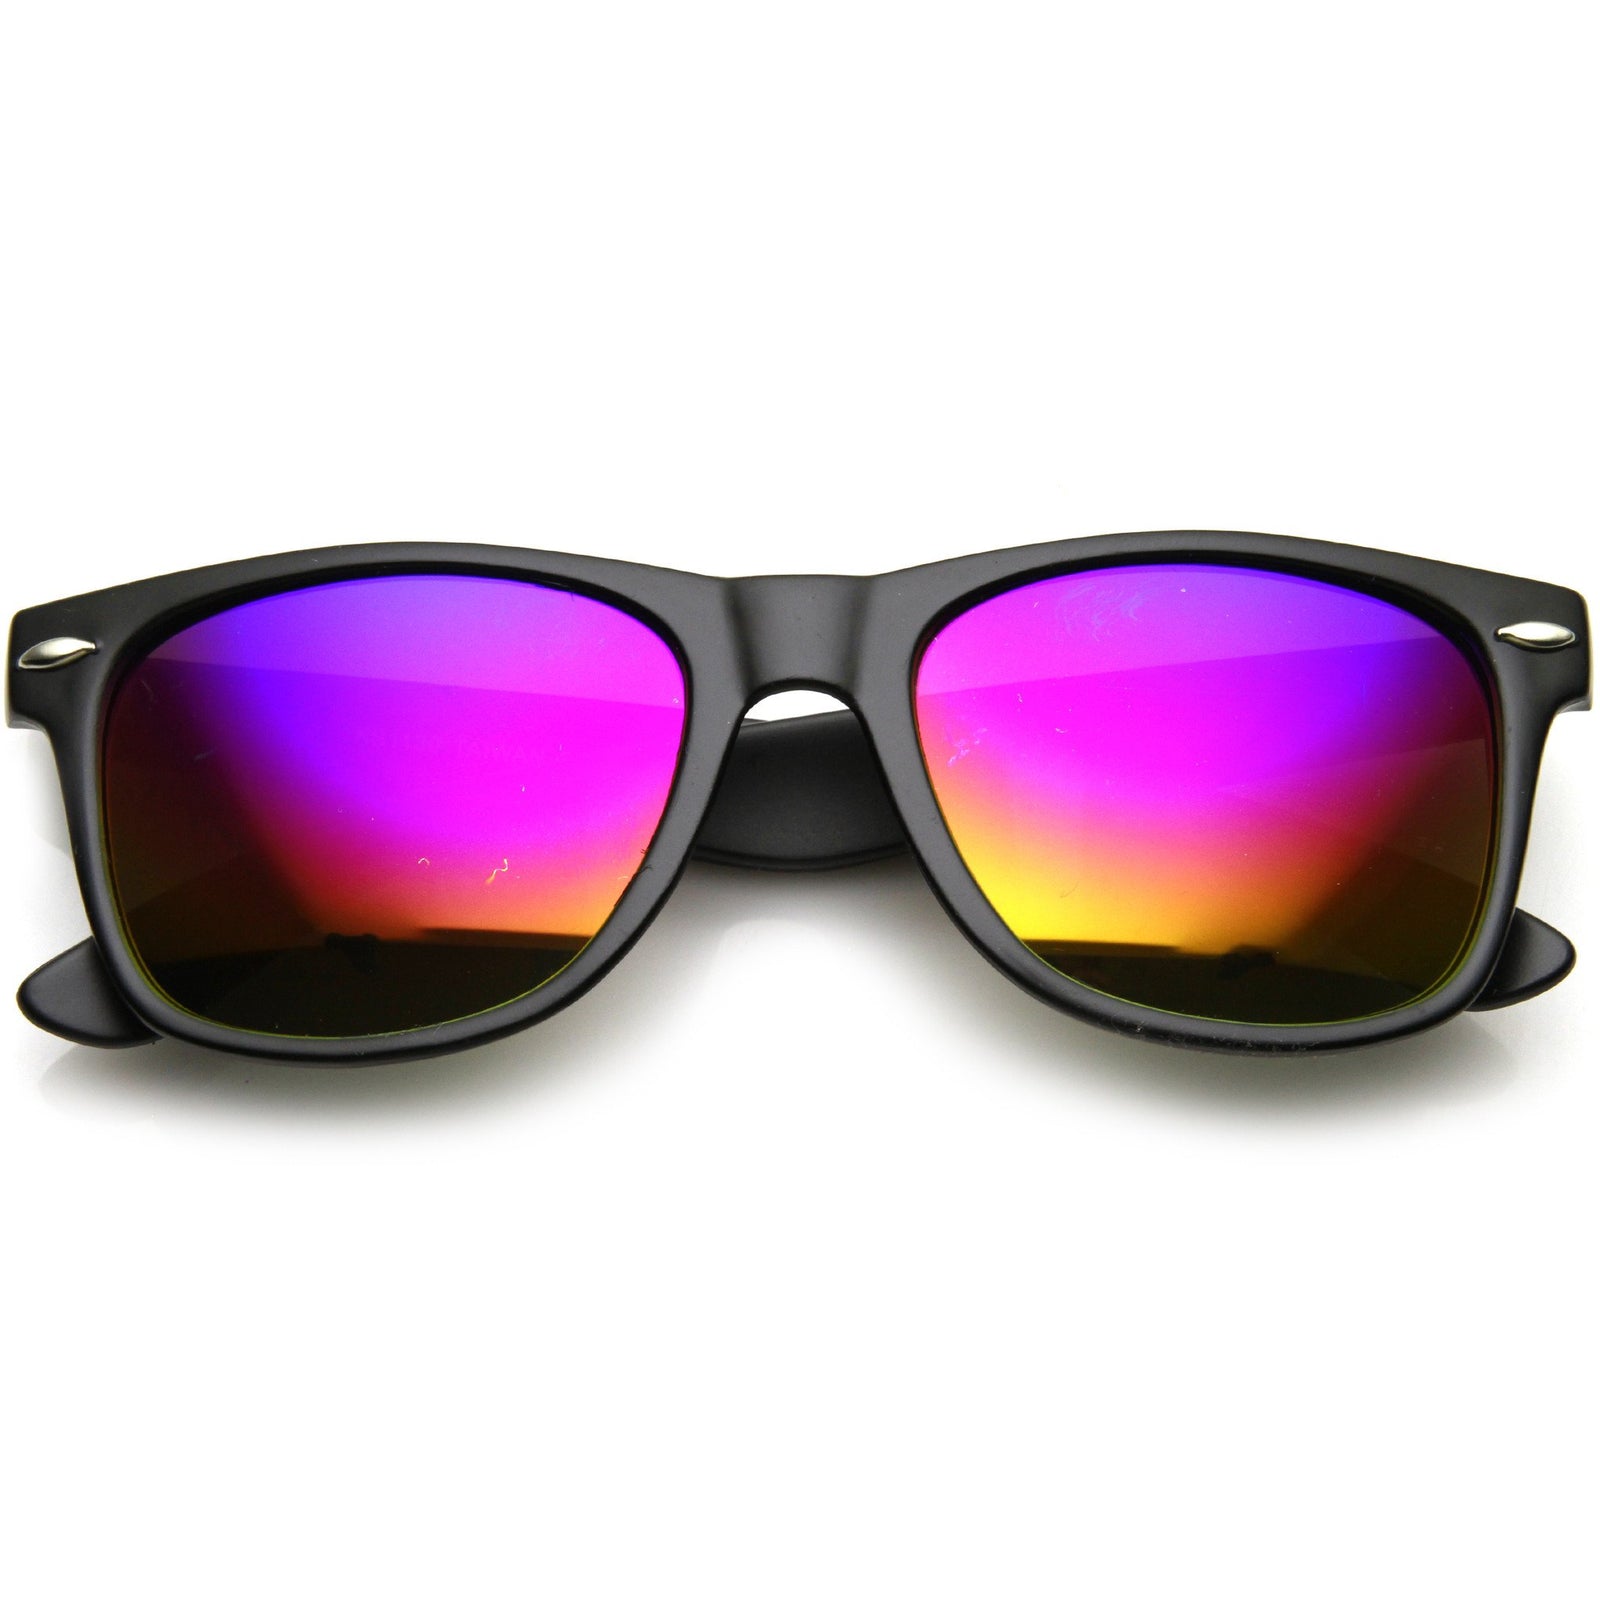 Novelty Rainbow Unicorn Sunglasses Horn Rimmed Square Lens 50mm